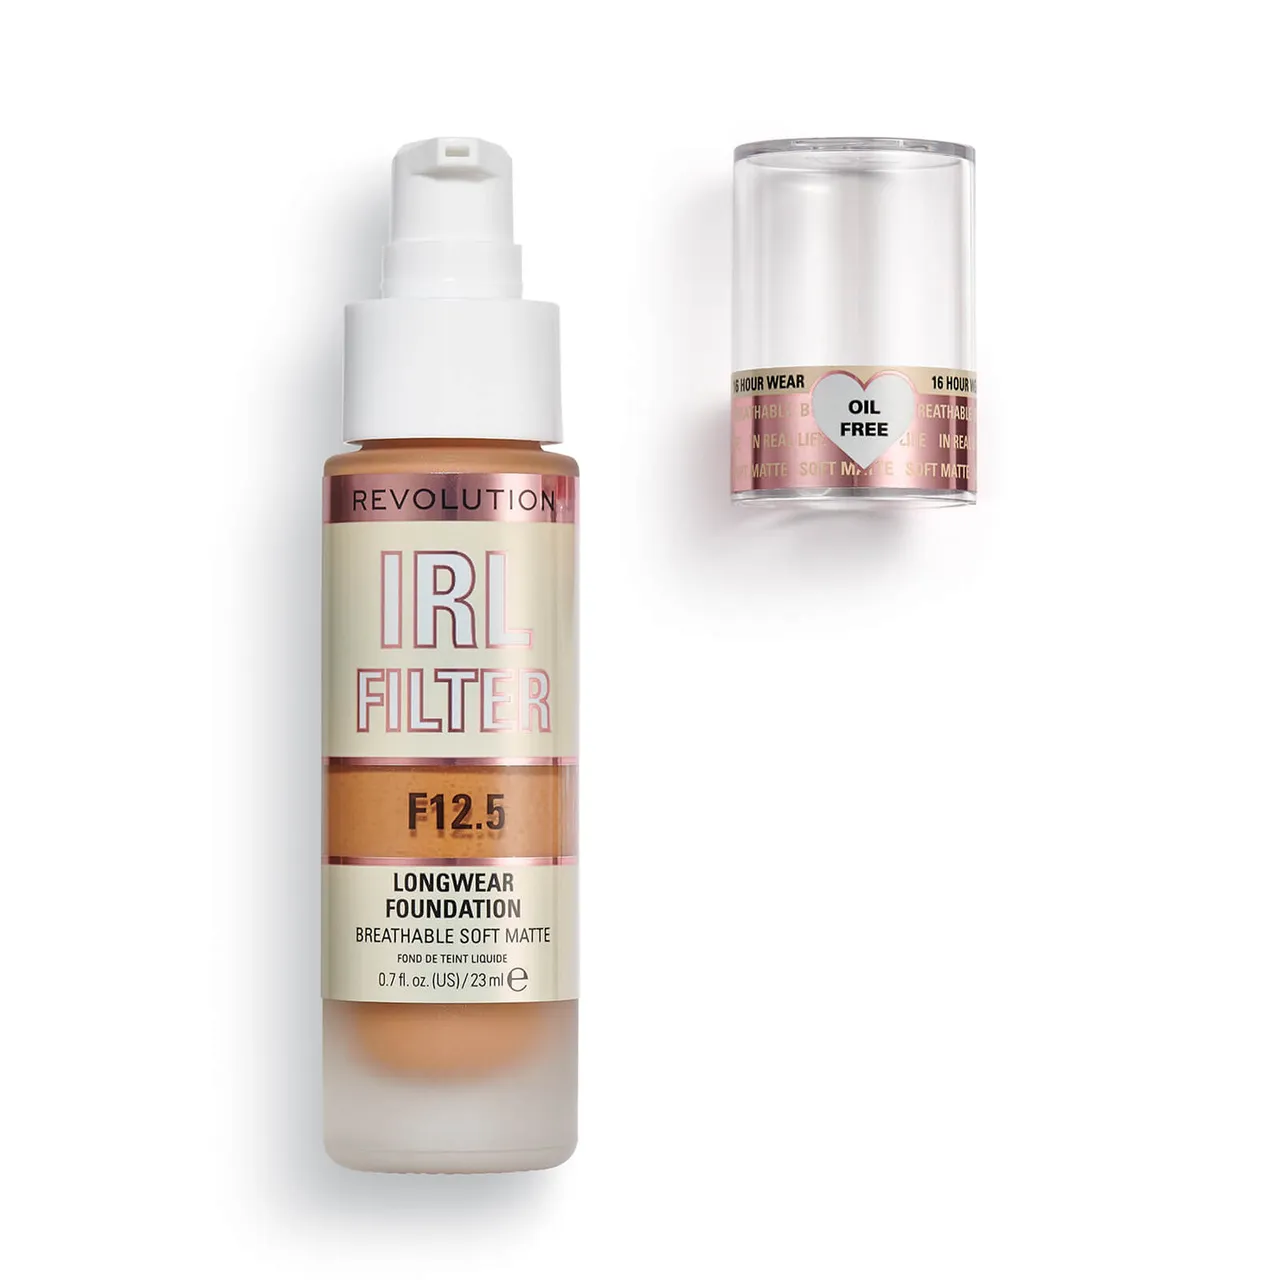 Makeup Revolution IRL Filter Longwear Foundation 23ml (Various Shades) - F12.5